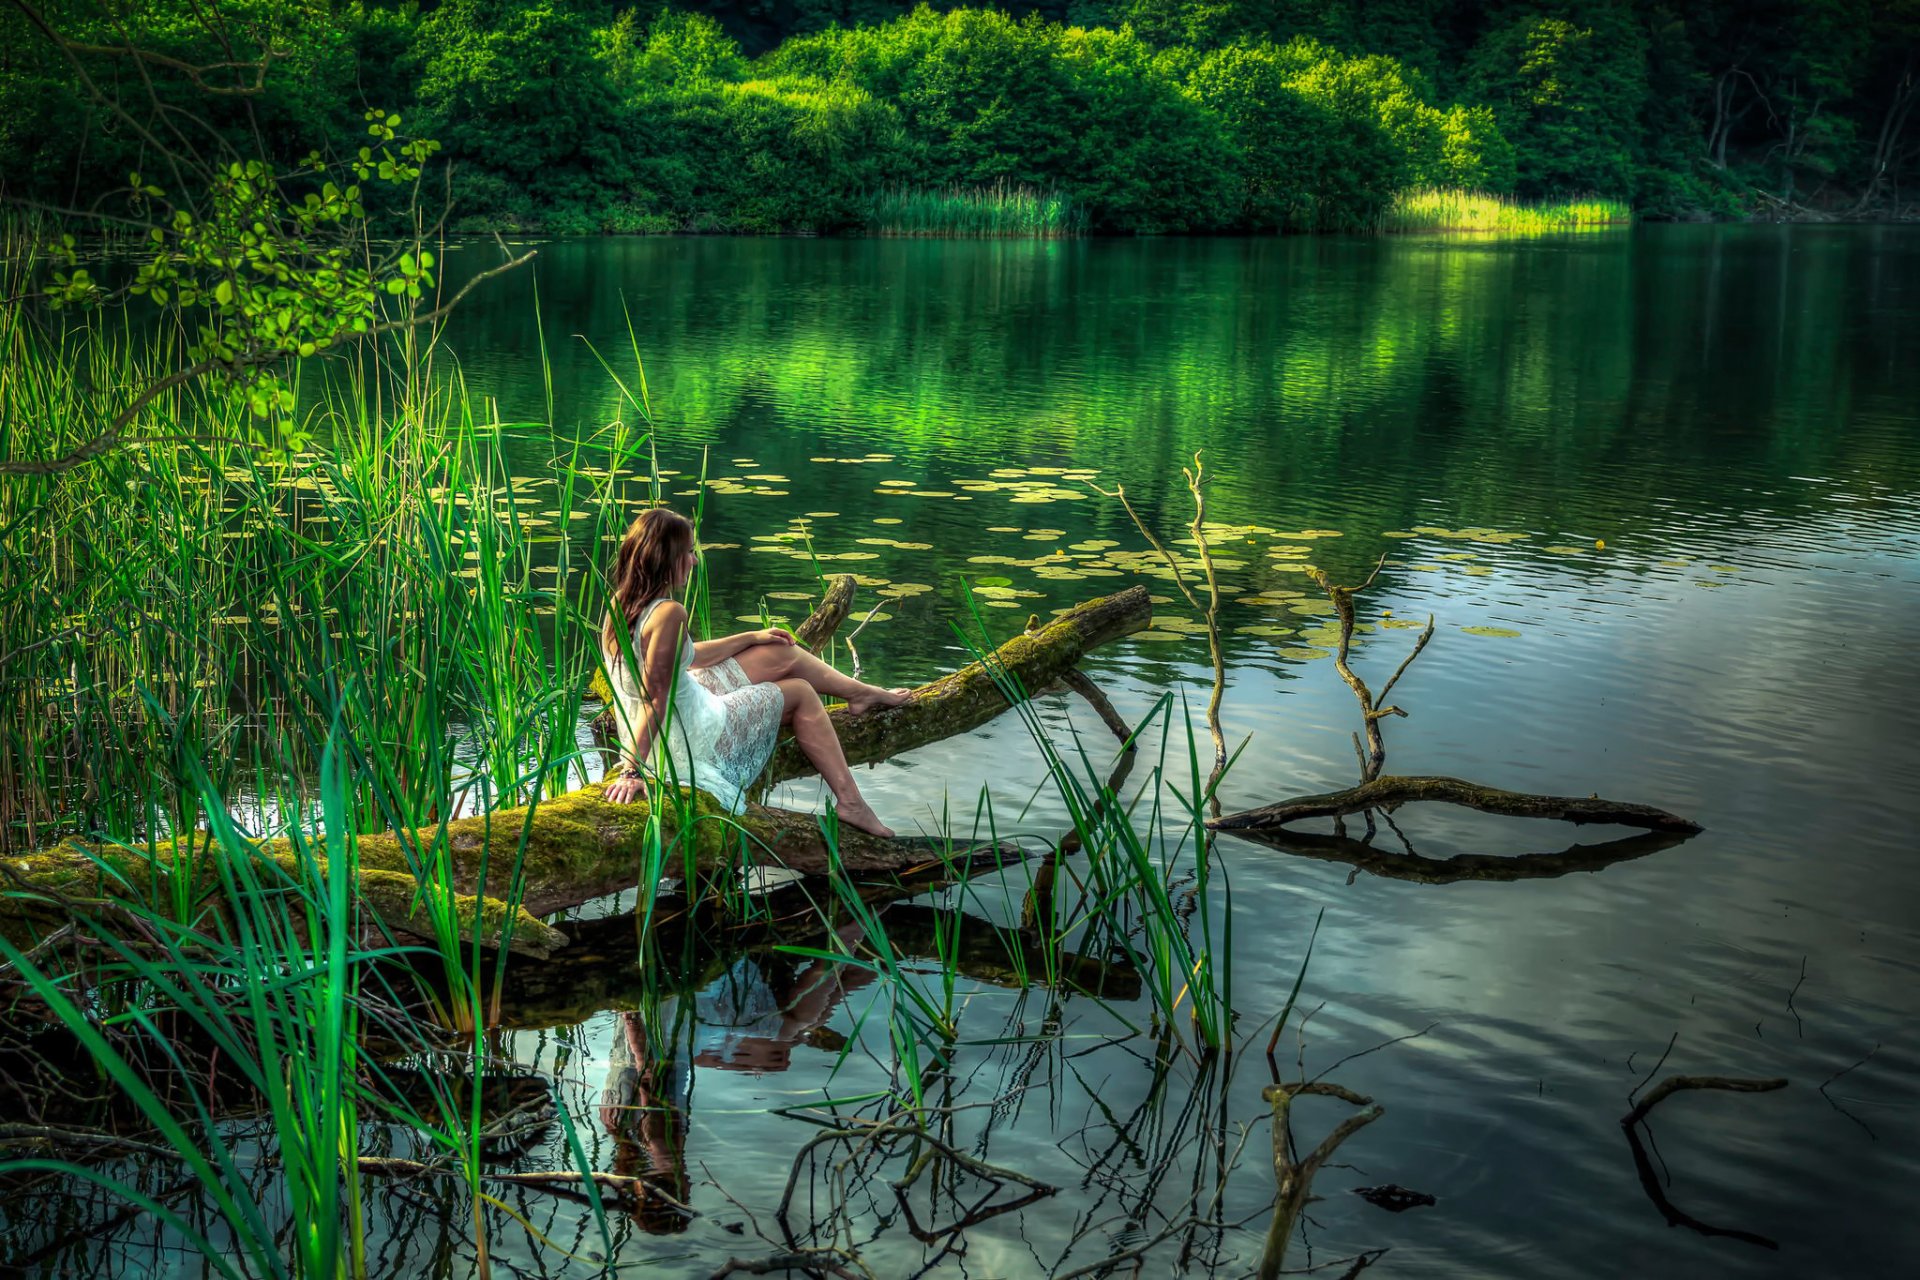 Девушка оголяется возле ручья